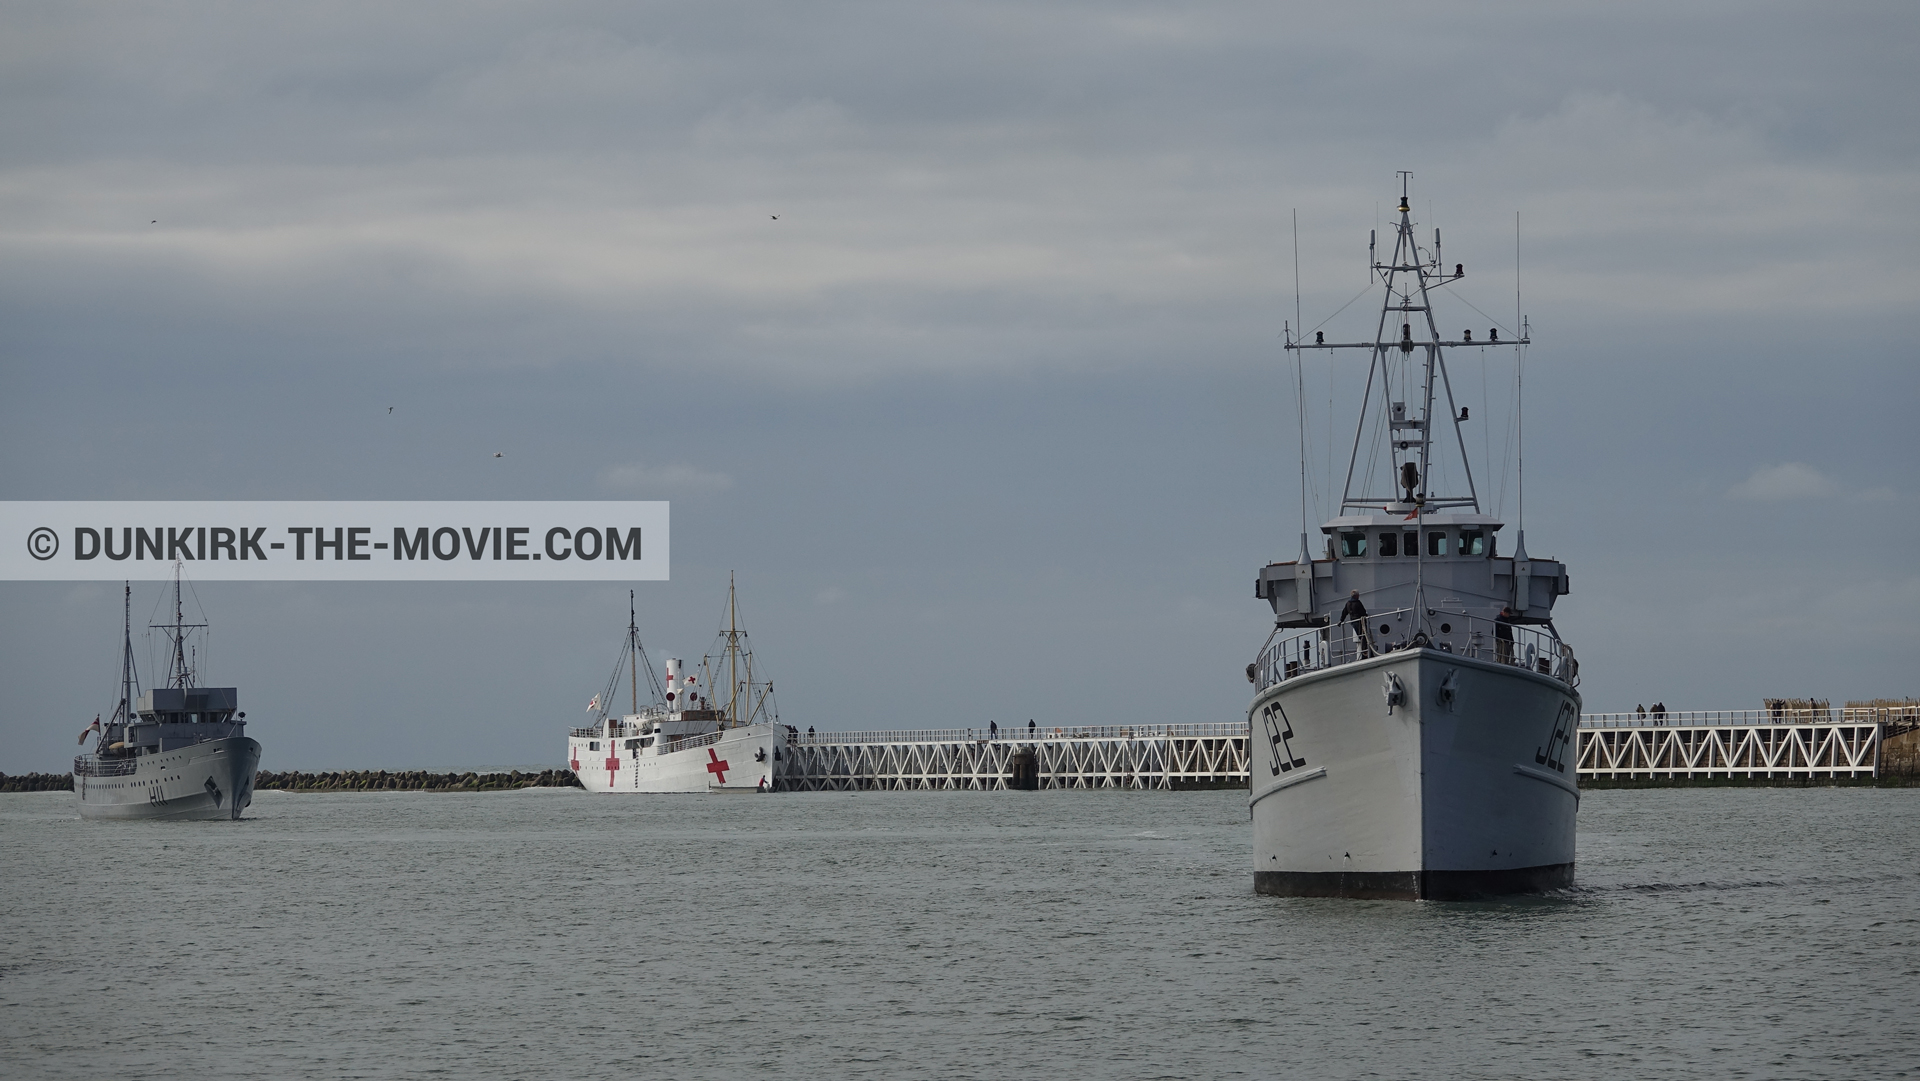 Fotos con barco, cielo nublado, H11 - MLV Castor, J22 -Hr.Ms. Naaldwijk, muelle del ESTE, mares calma, M/S Rogaland,  durante el rodaje de la película Dunkerque de Nolan